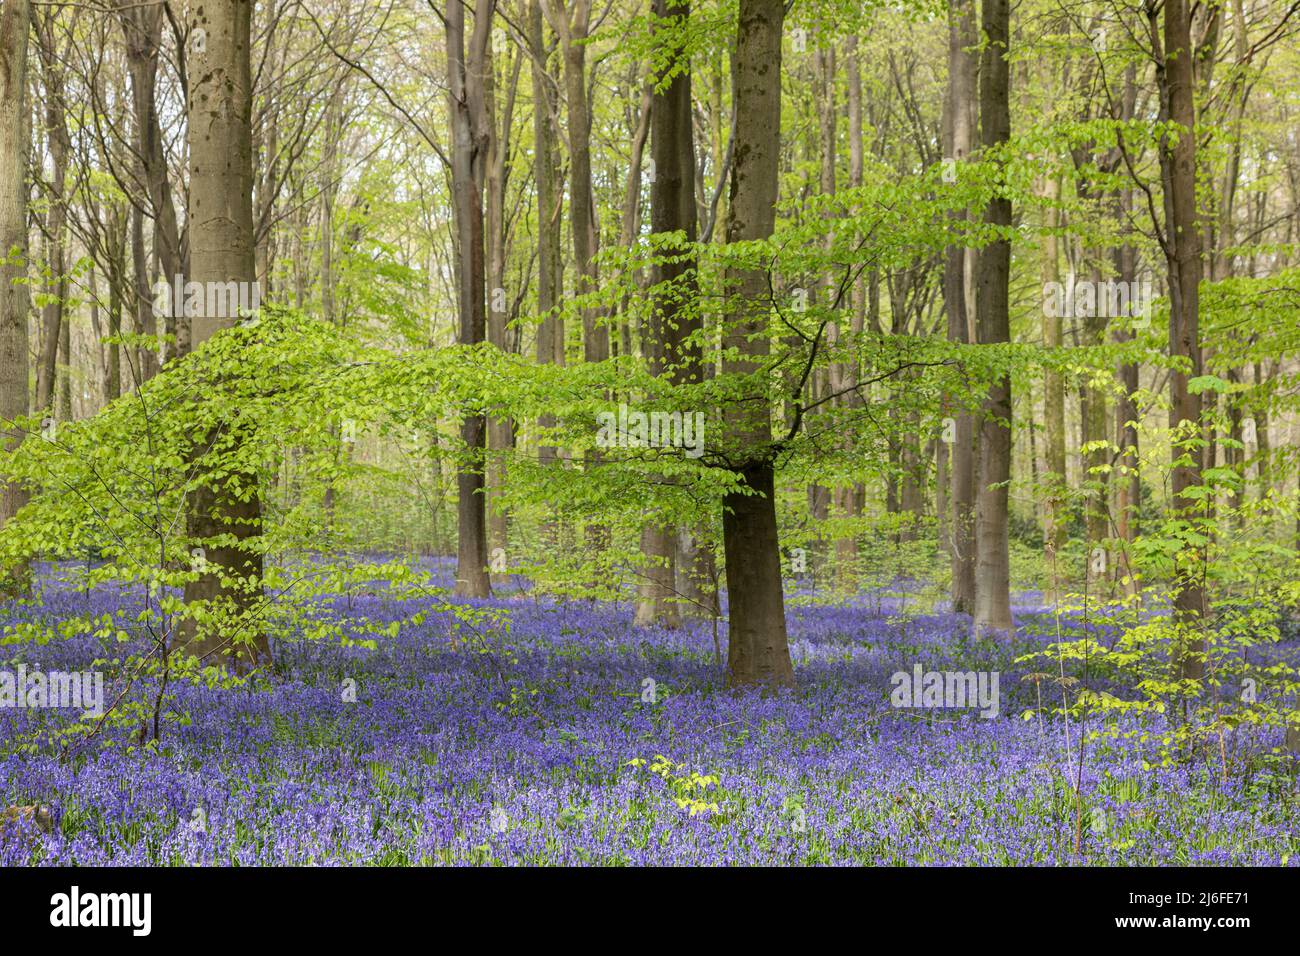 Tapis de Spring Bluebells - jacinthoides non scripta à West Woods bluebell Wood, près de Marlborough, Wiltshire, Angleterre, Royaume-Uni Banque D'Images